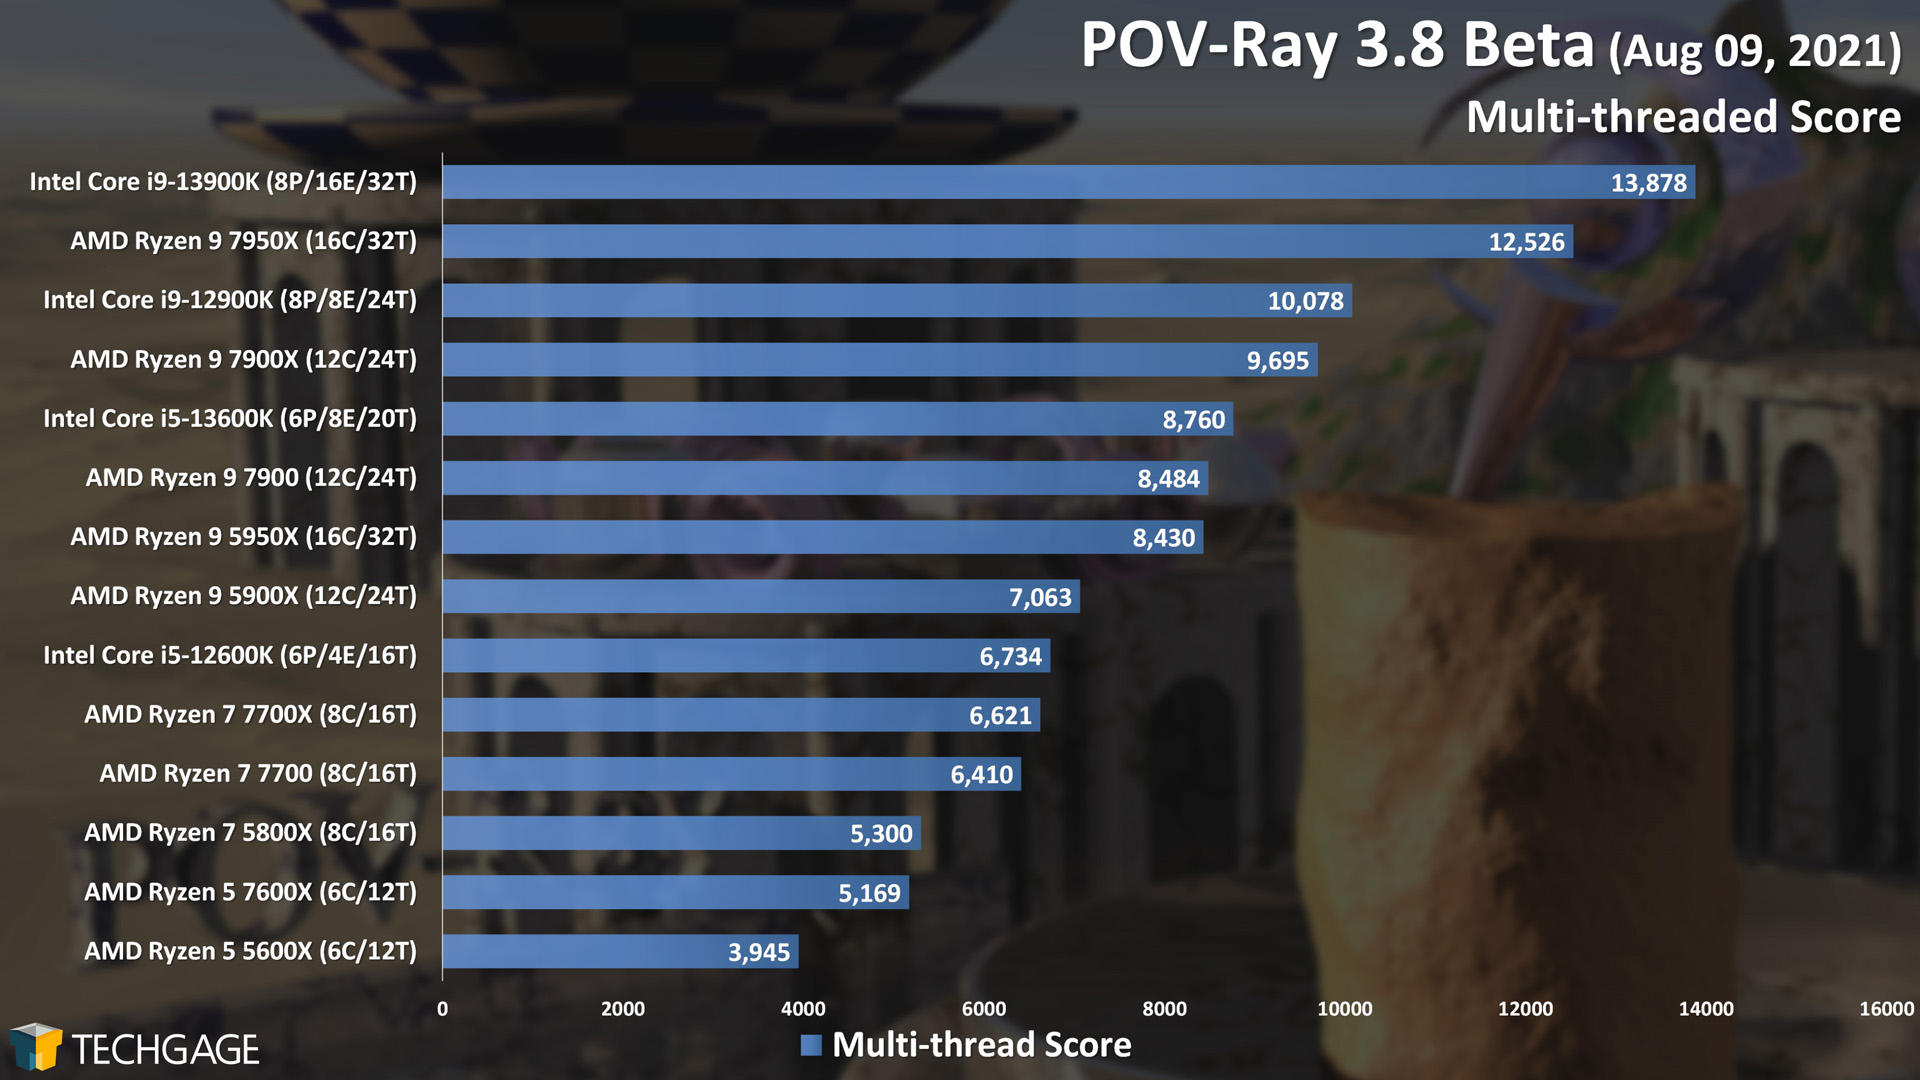 POV-Ray - Multi-threaded Score